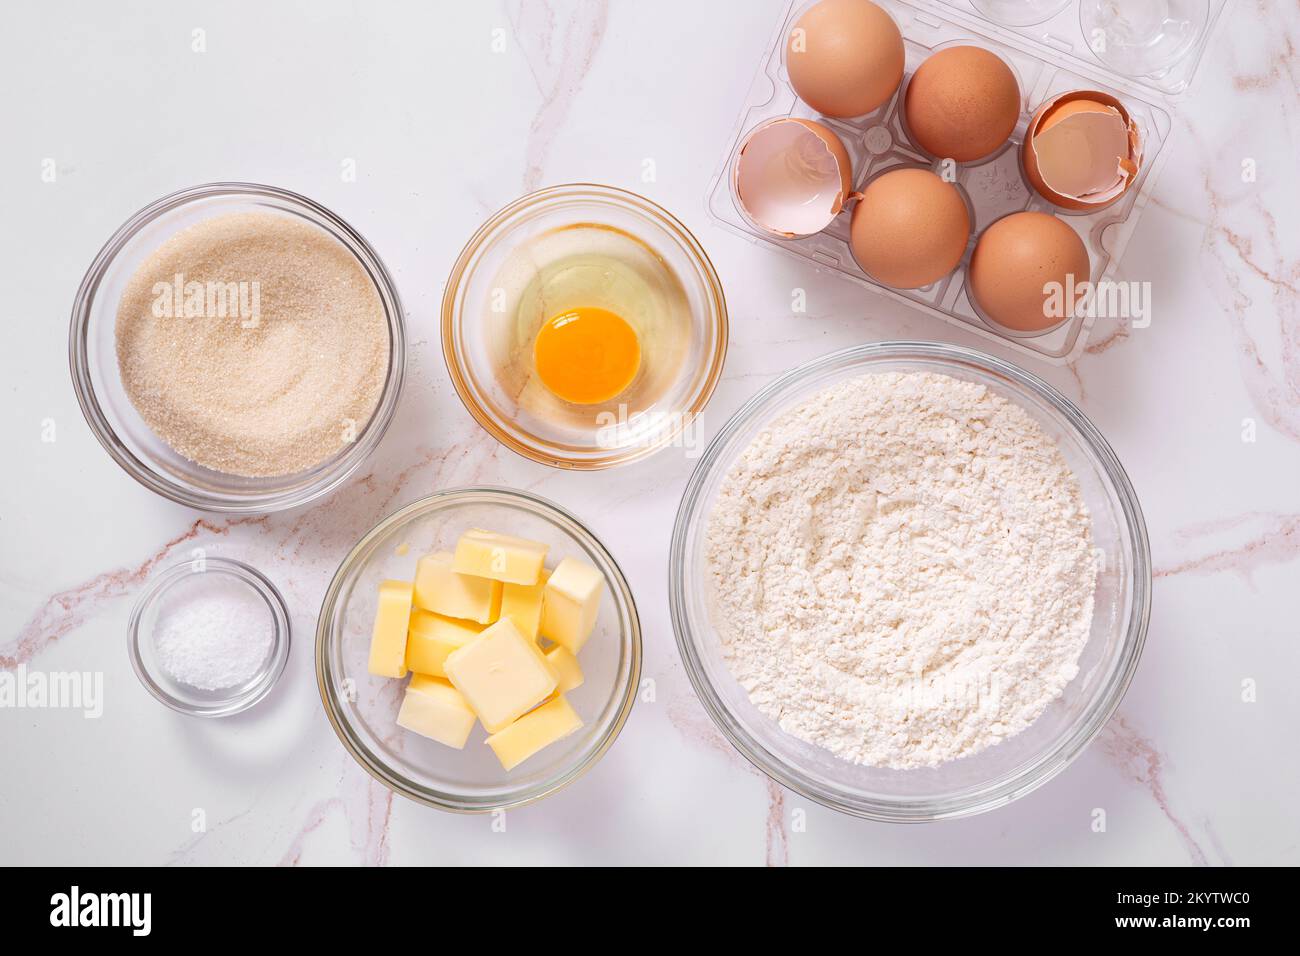 Draufsicht der grundlegenden rohen Backzutaten wie Eier, Zucker, Mehl, Butter, Salz, Auf einer Marmoroberfläche Stockfoto